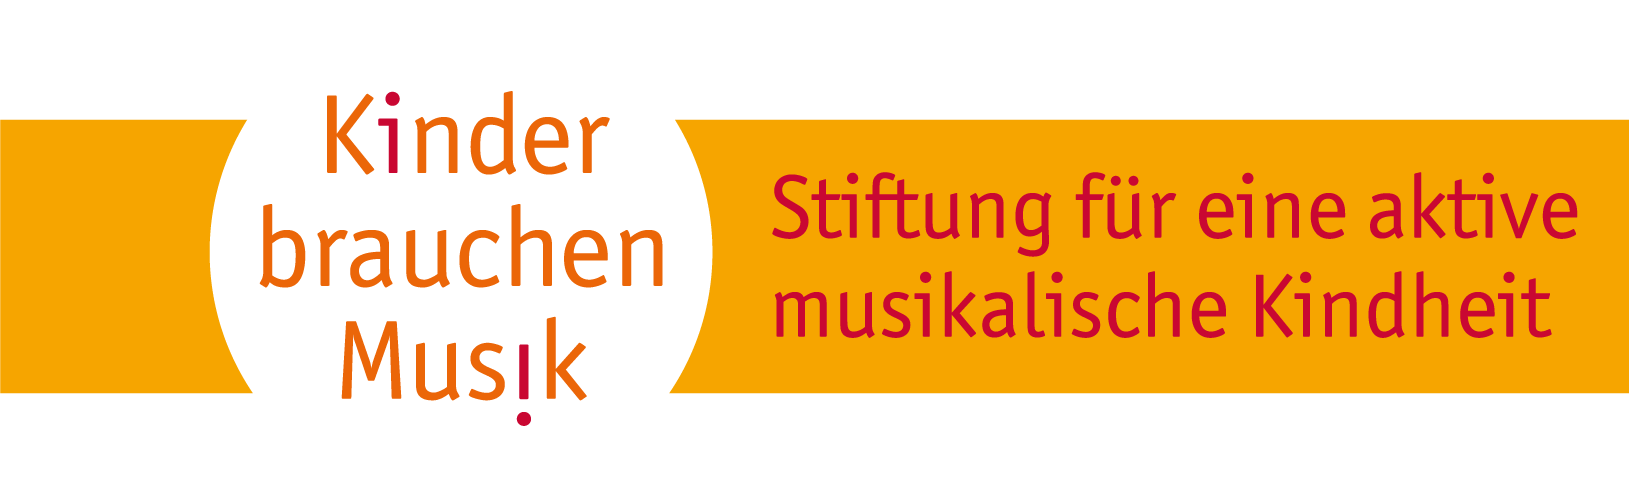 Logo der Stiftung Kinder brauchen Musik